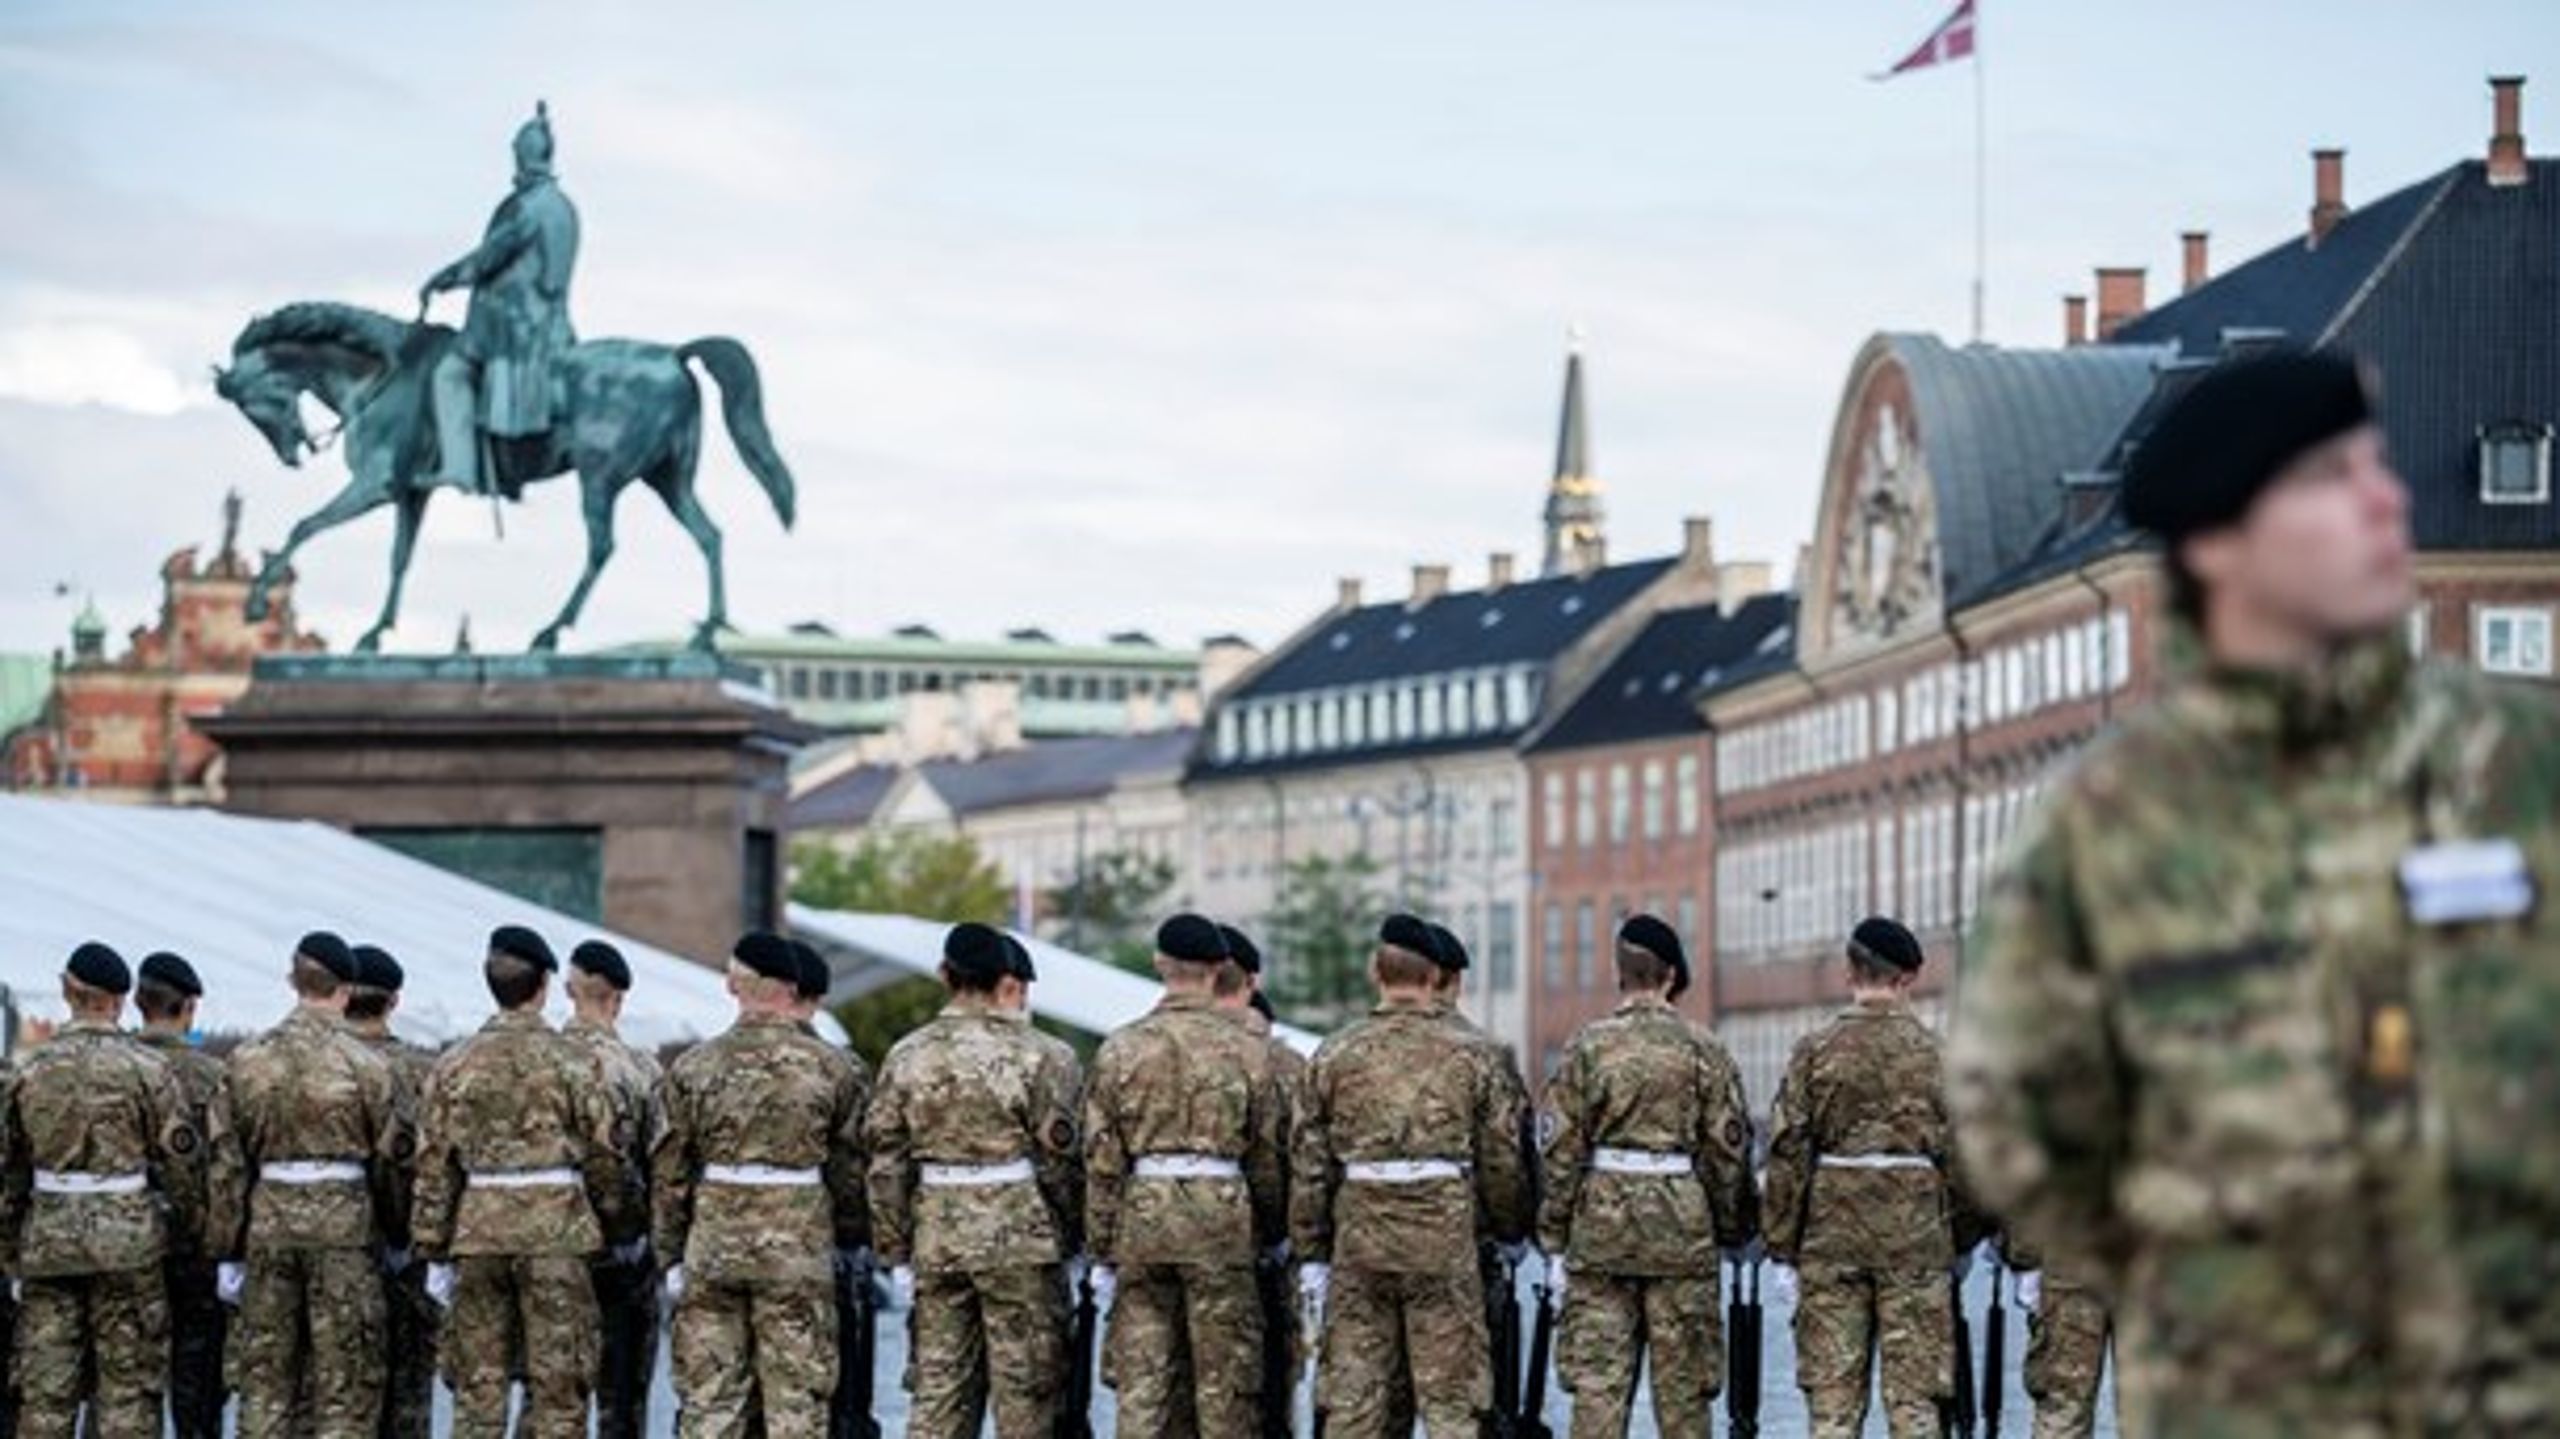 Danmarks udsendte bliver hvert år fejret 5. september. Det har givet anledning til fokus&nbsp;på veteranerne, og Københavns Kommune vil nu igen tage hul på den veteranpolitik, de skrottede i 2014.